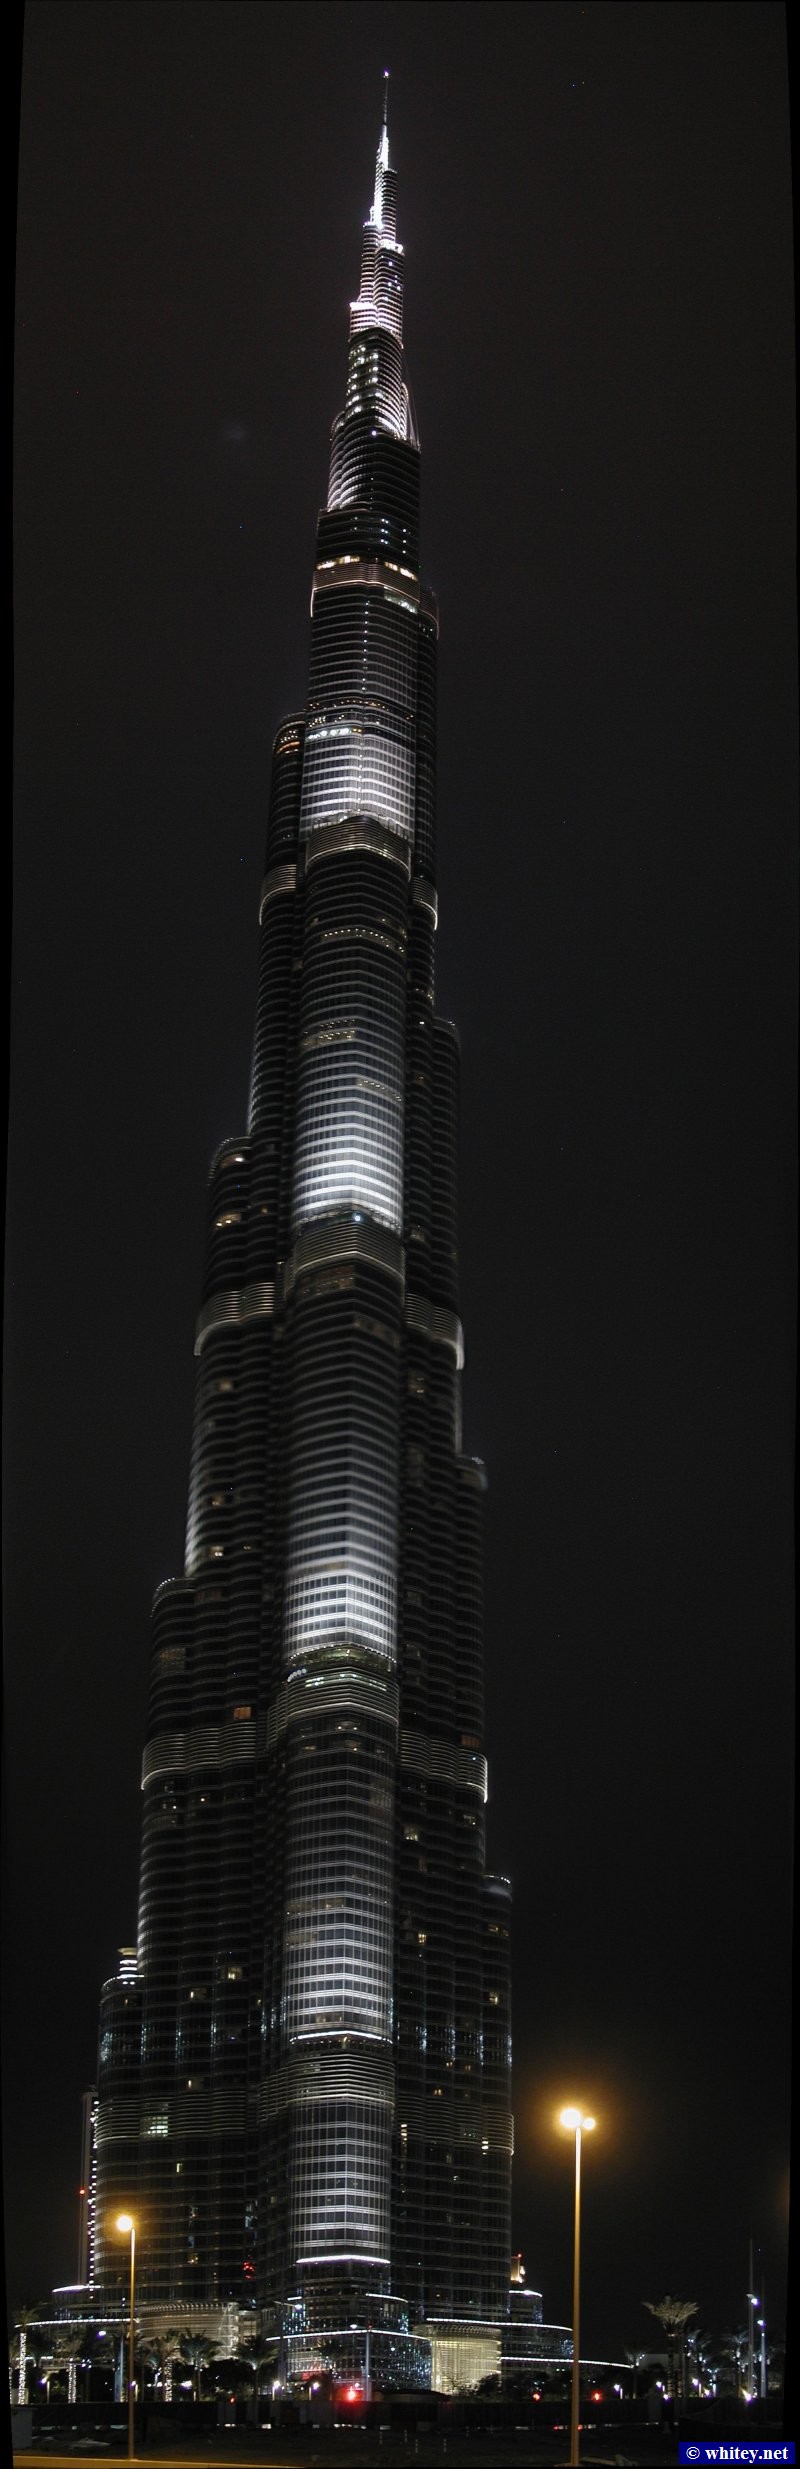 부르즈 할리파, 829m high, 두바이, 아랍에미리트.